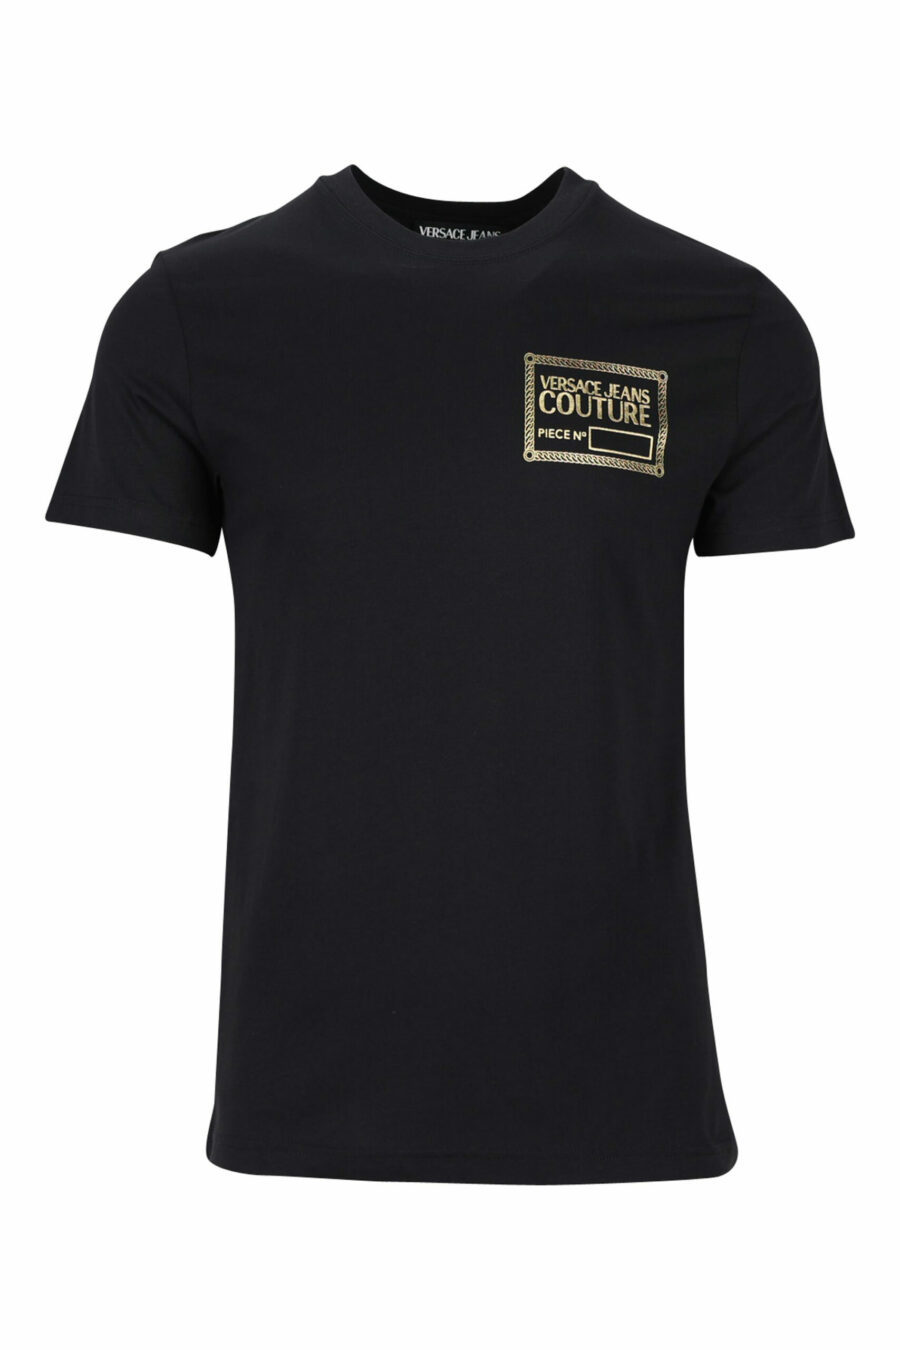 T-shirt preta com minilogo dourado "piece number" - 8052019456875 scaled